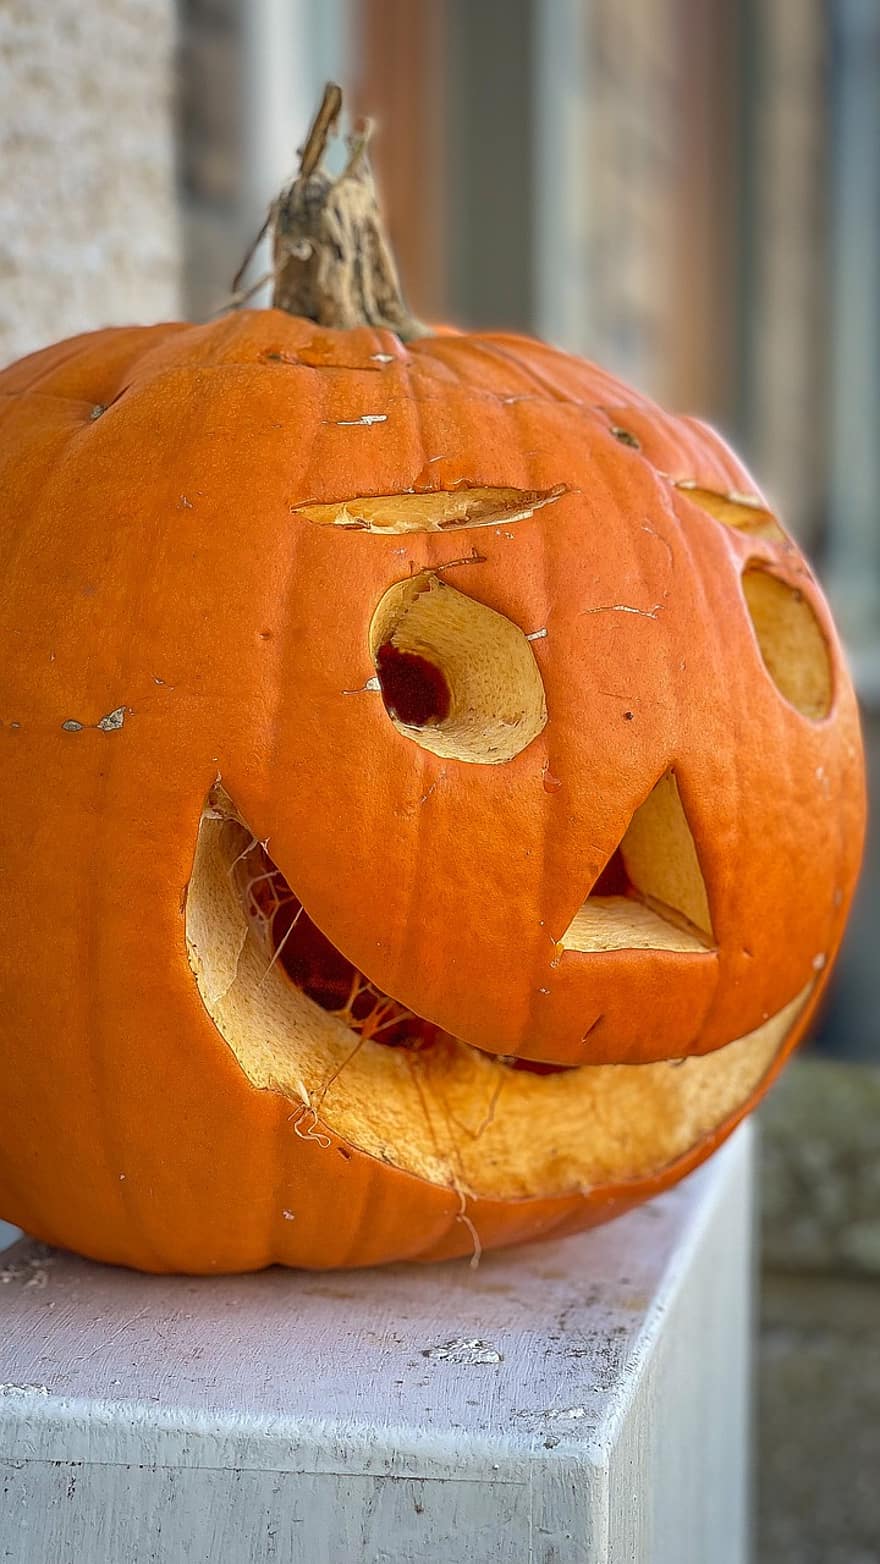 тыква, Хэллоуин, жуткий, страшно, октябрь, осень, фонарь, фильм ужасов, улыбается, время года, овощной